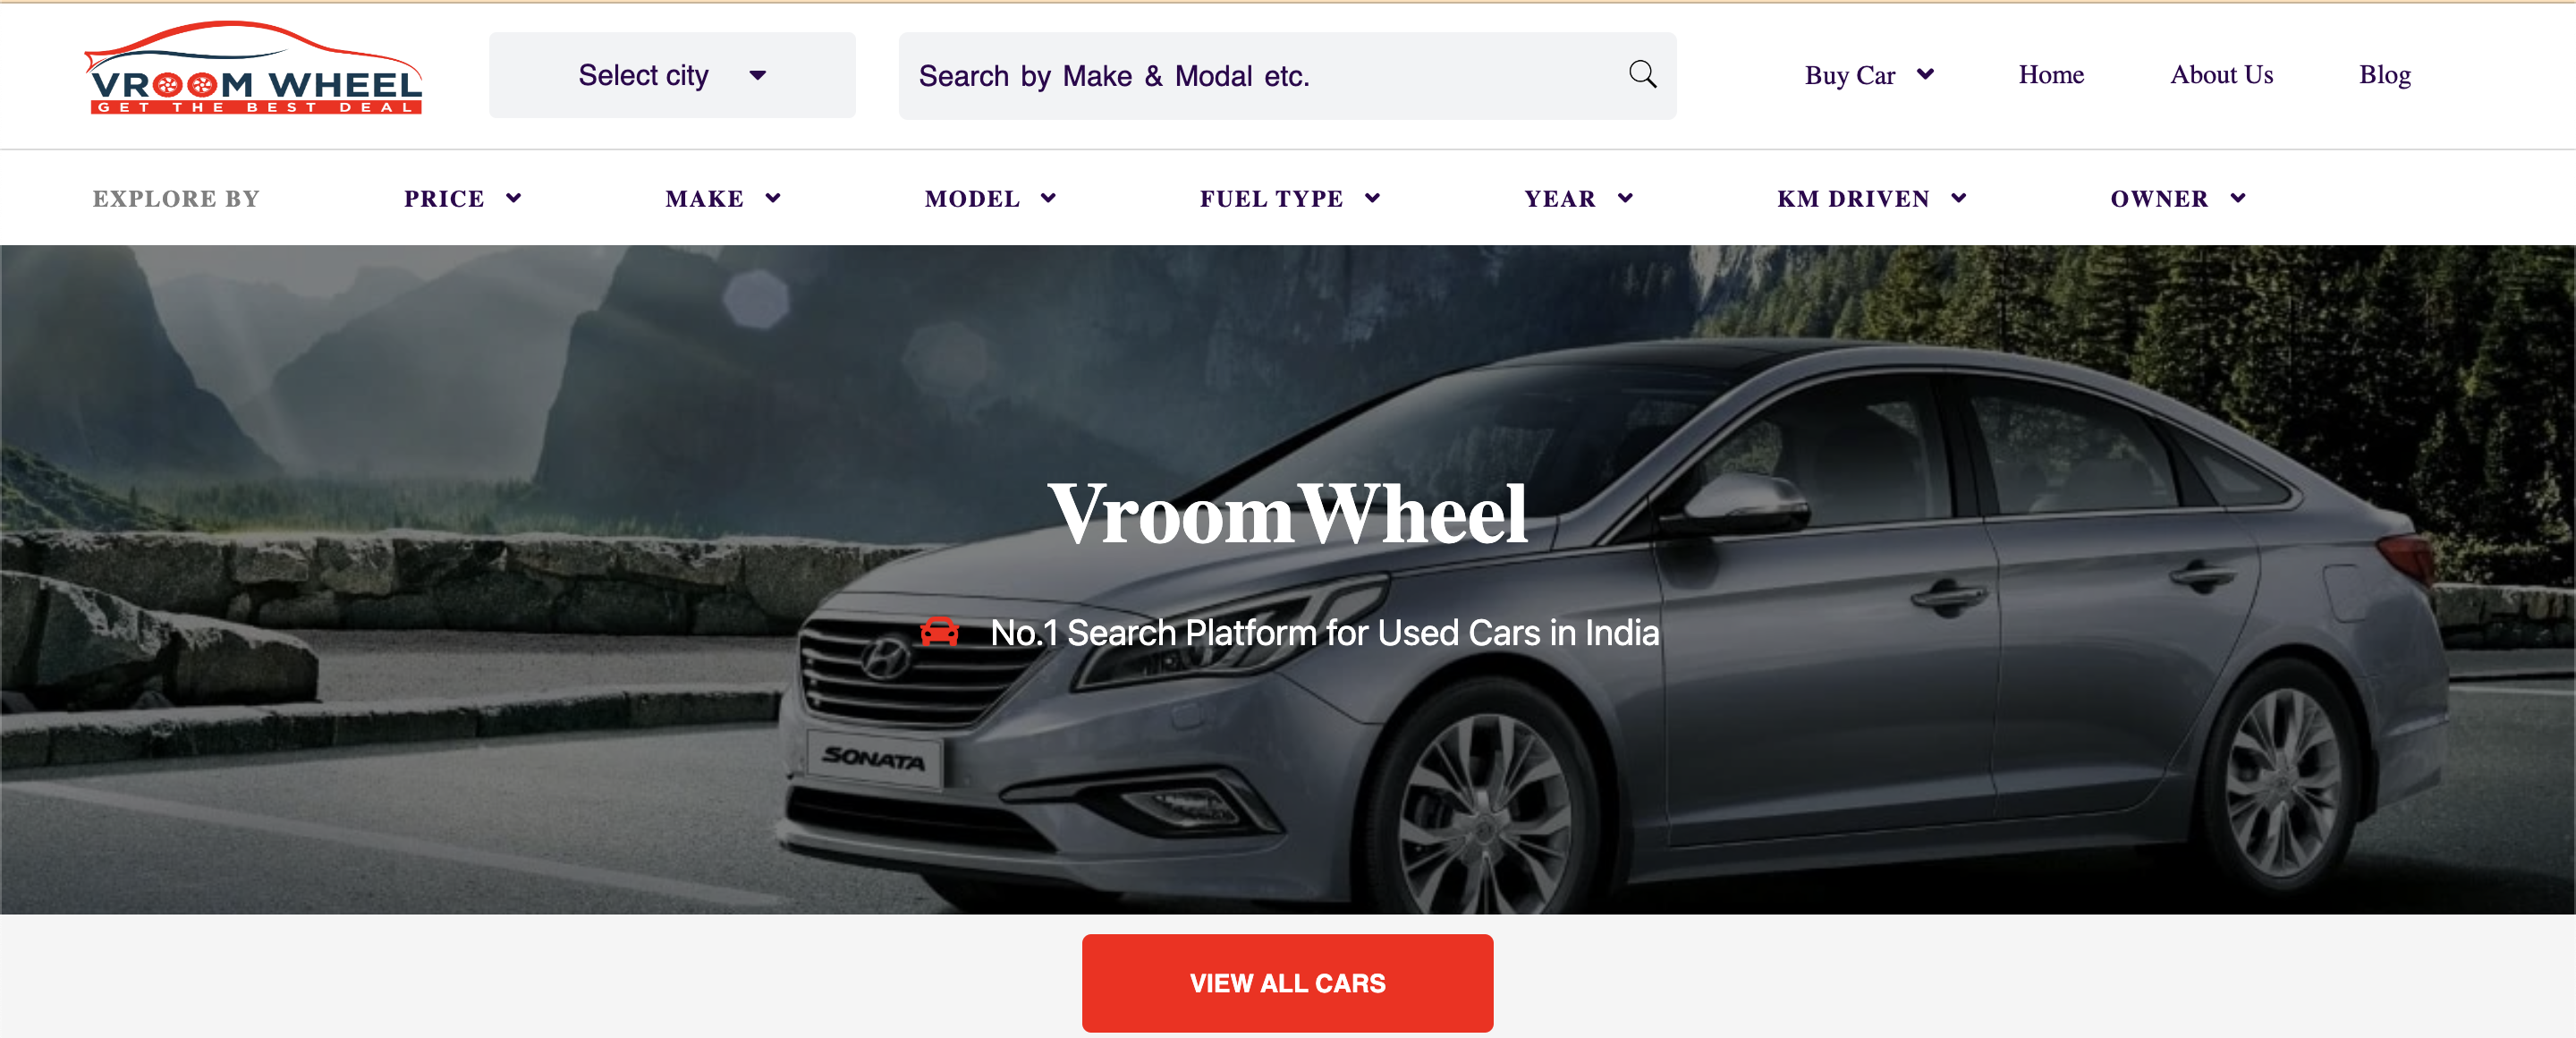 Vroom Wheel website snapshot